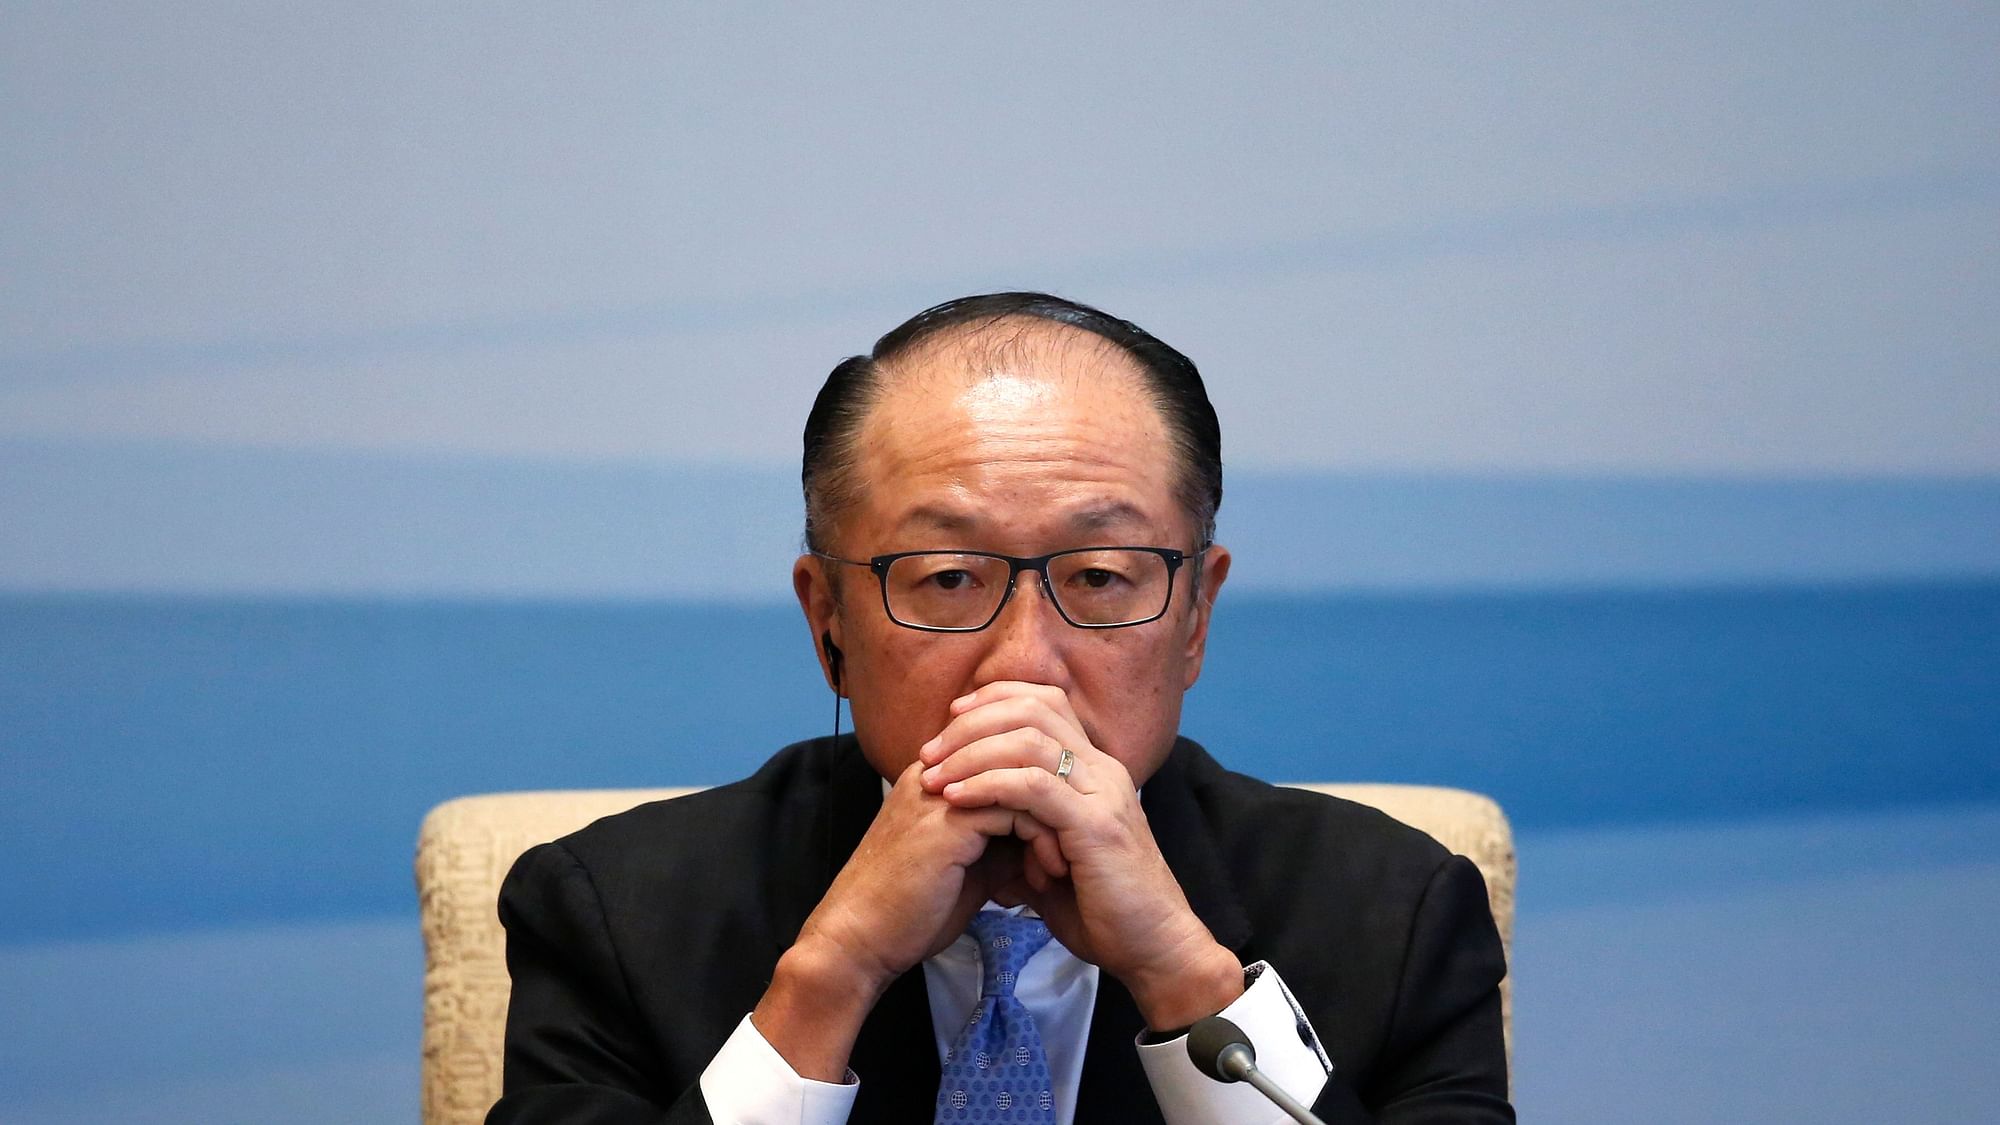 File photo of World Bank President Jim Yong Kim.